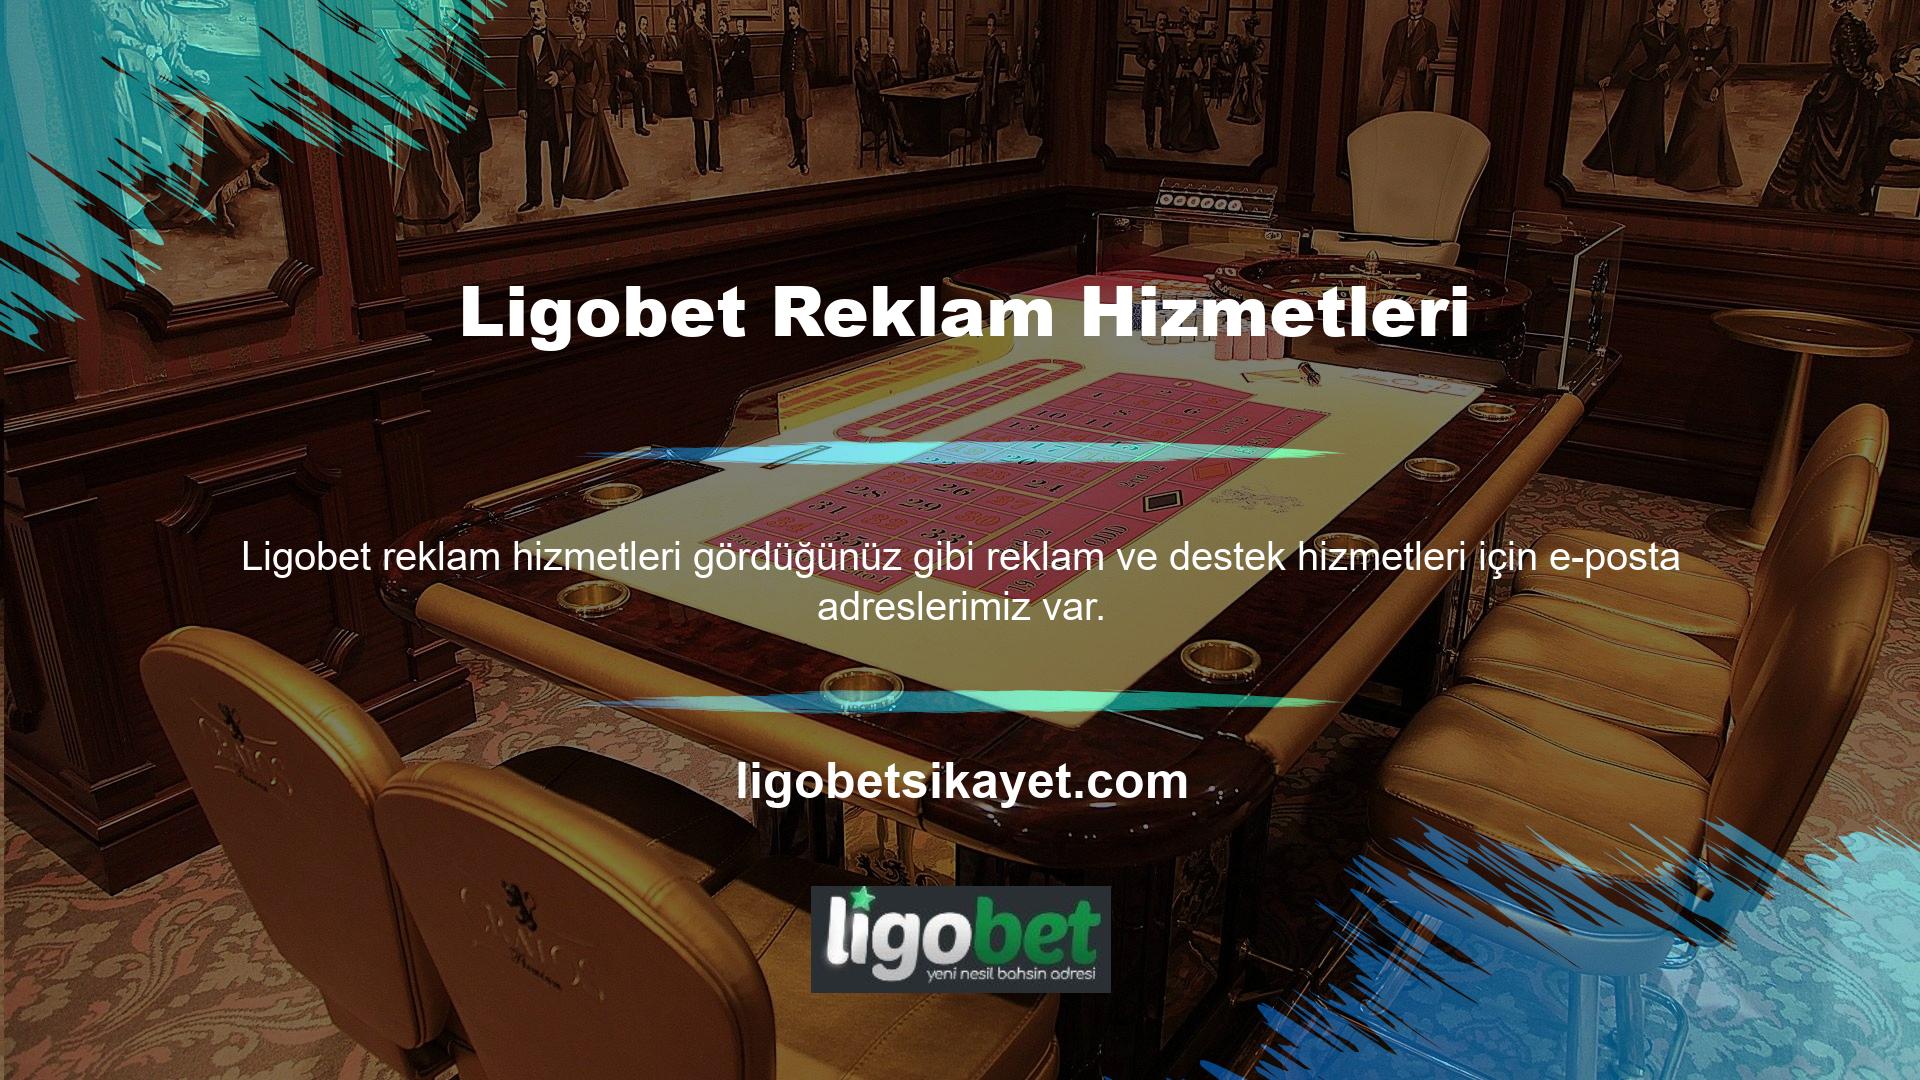 Türkçe dil seçeneğine başvurup Ligobet bulunabilirsiniz